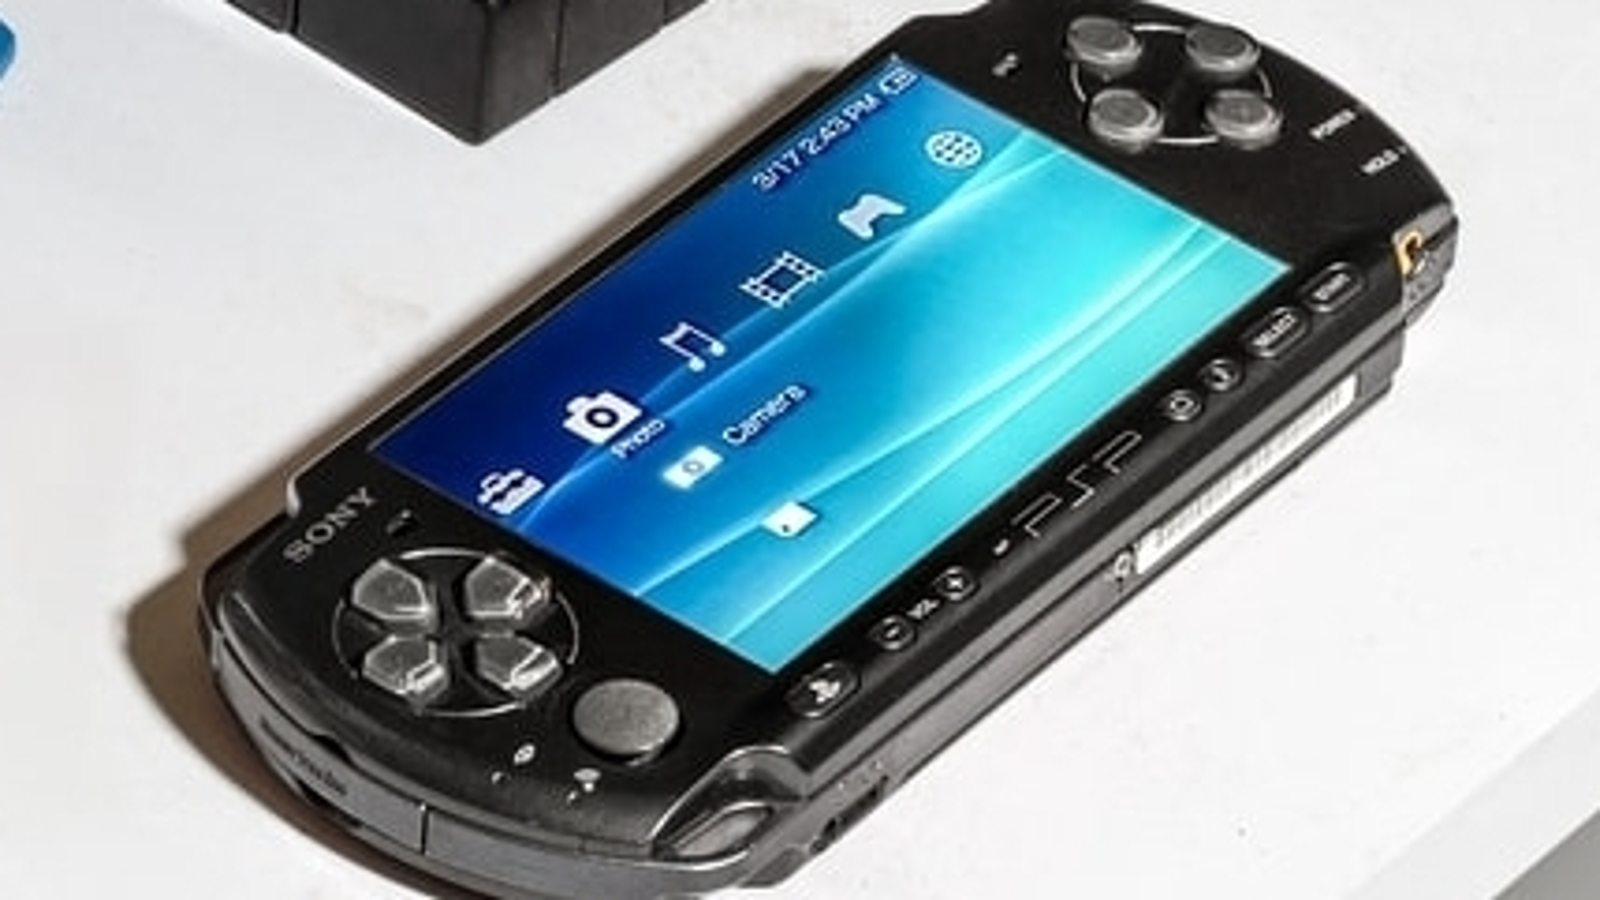 Jogos Playstation Portatail PSP Originais